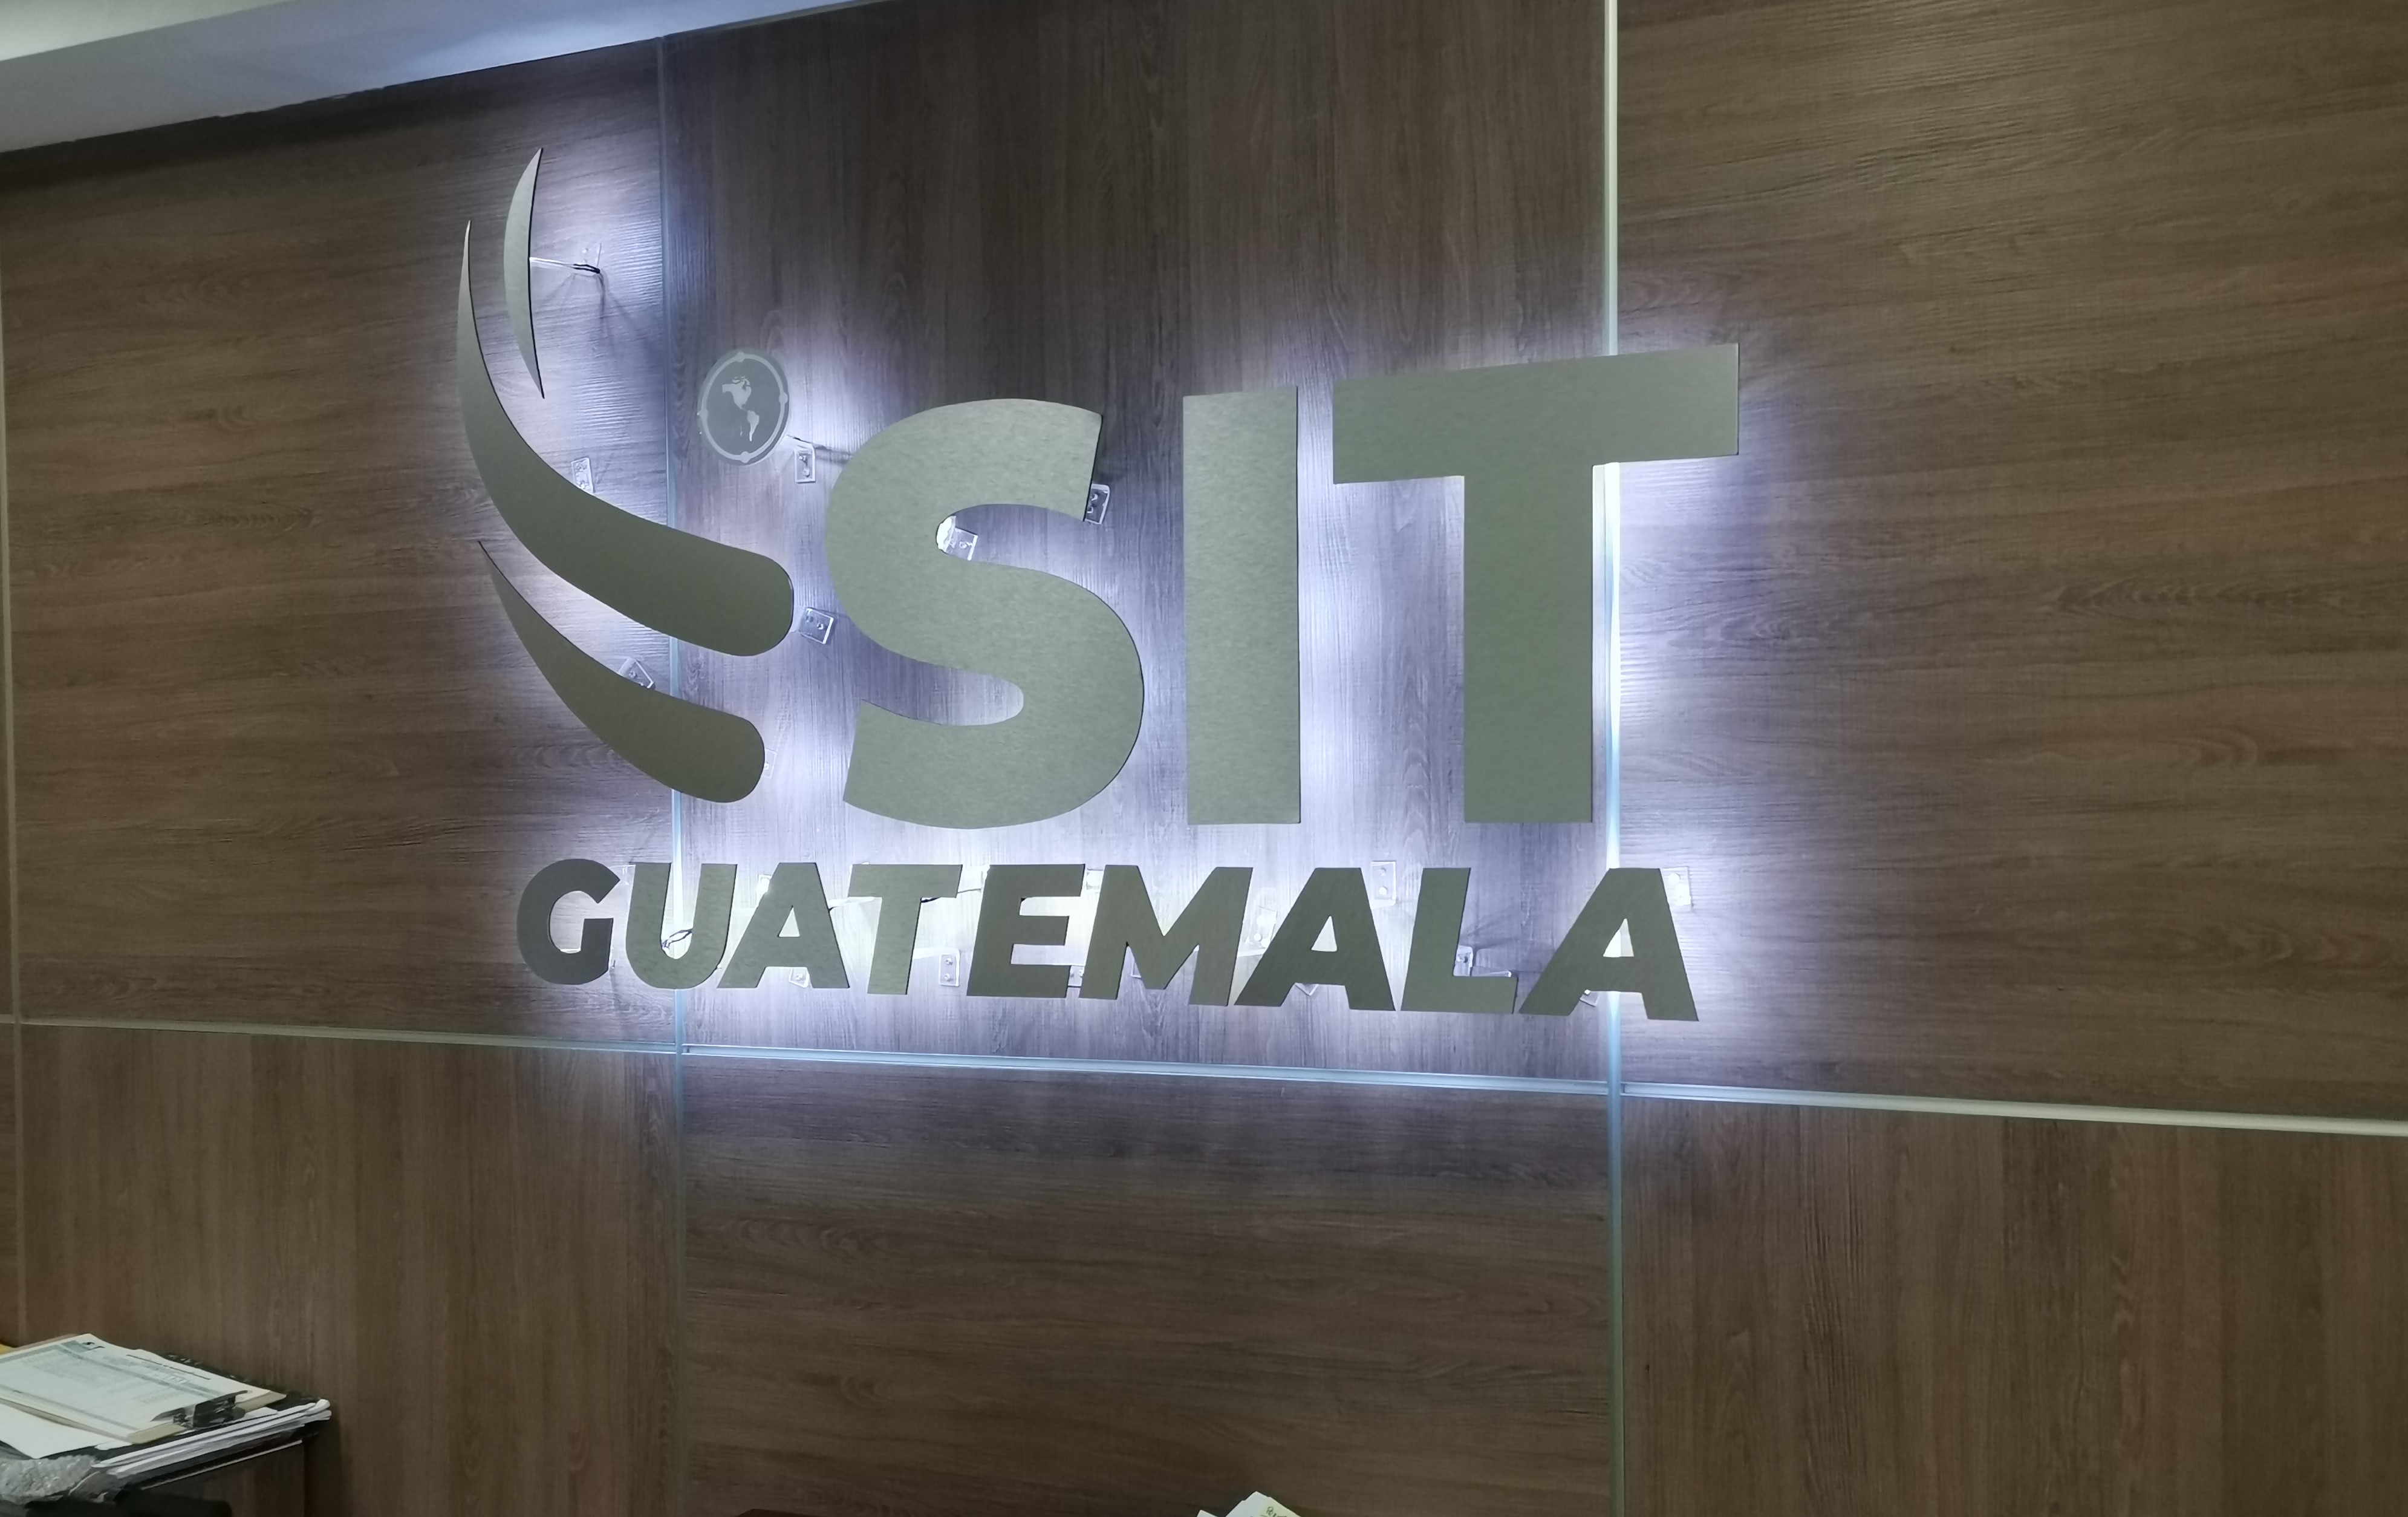 5G Guatemala